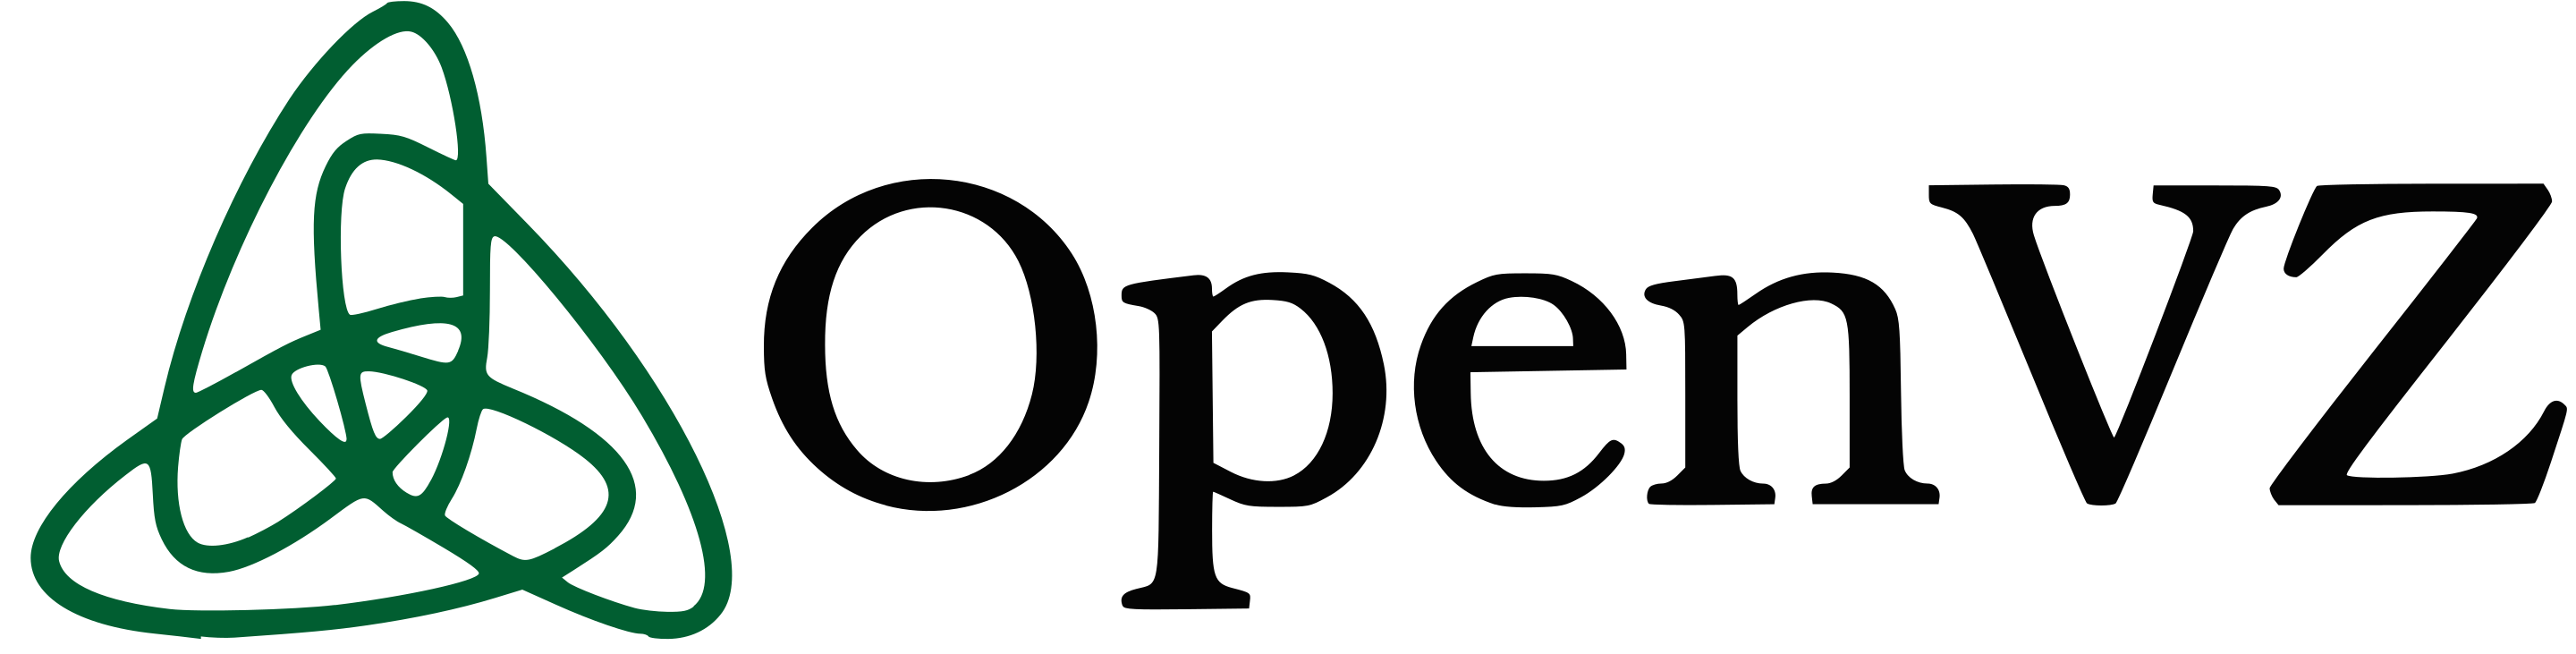 What is new in OpenVZ Virtualization – Sneak peek of OpenVZ 8 and OpenVZ 9